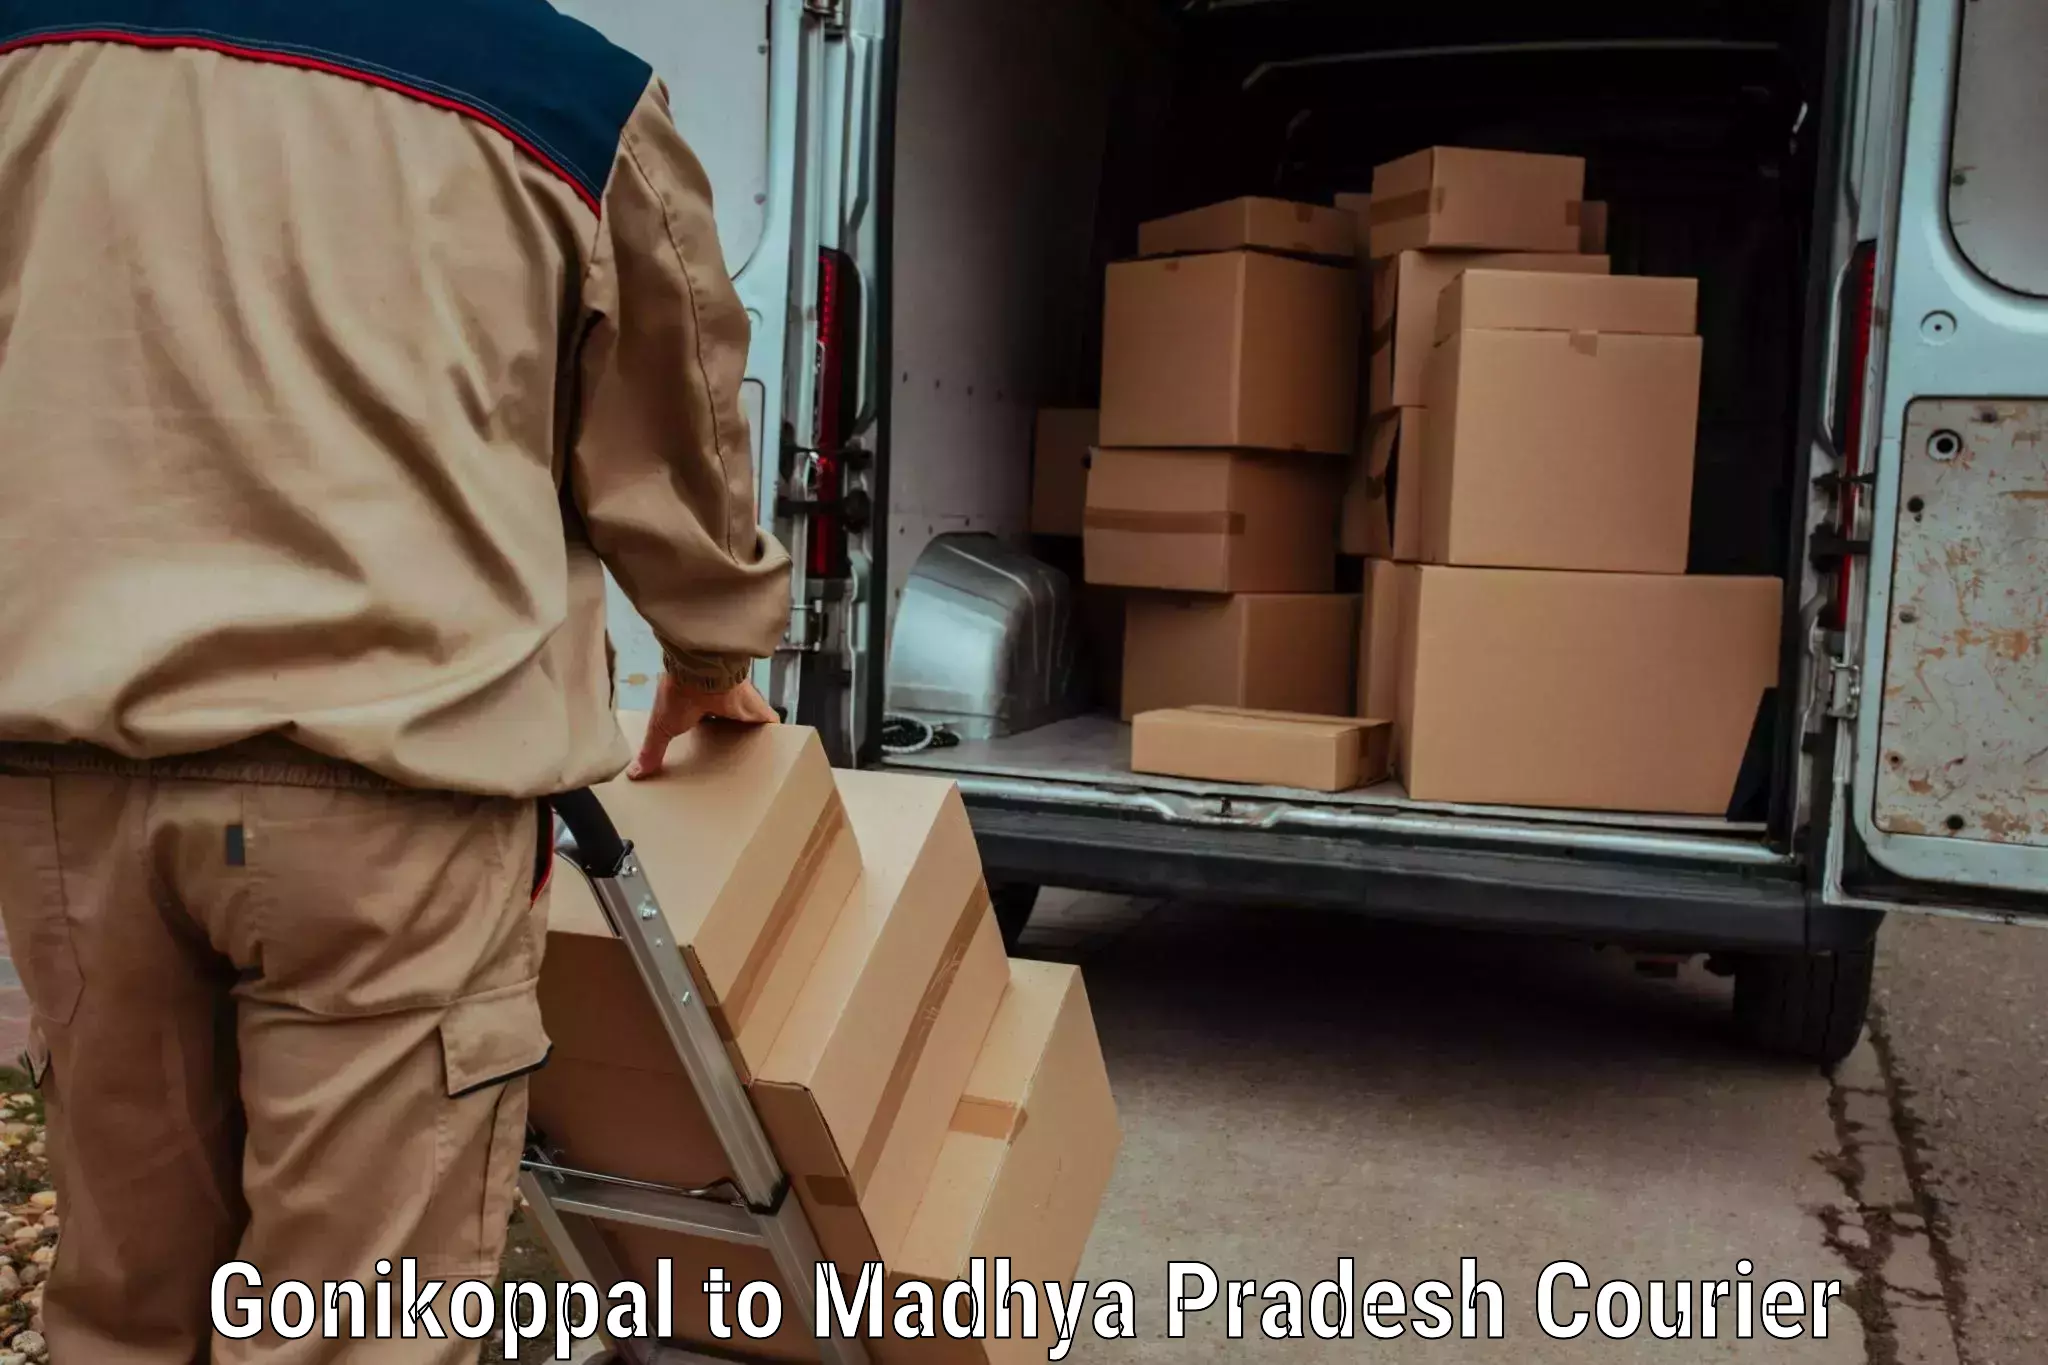 Efficient freight service Gonikoppal to Jabalpur